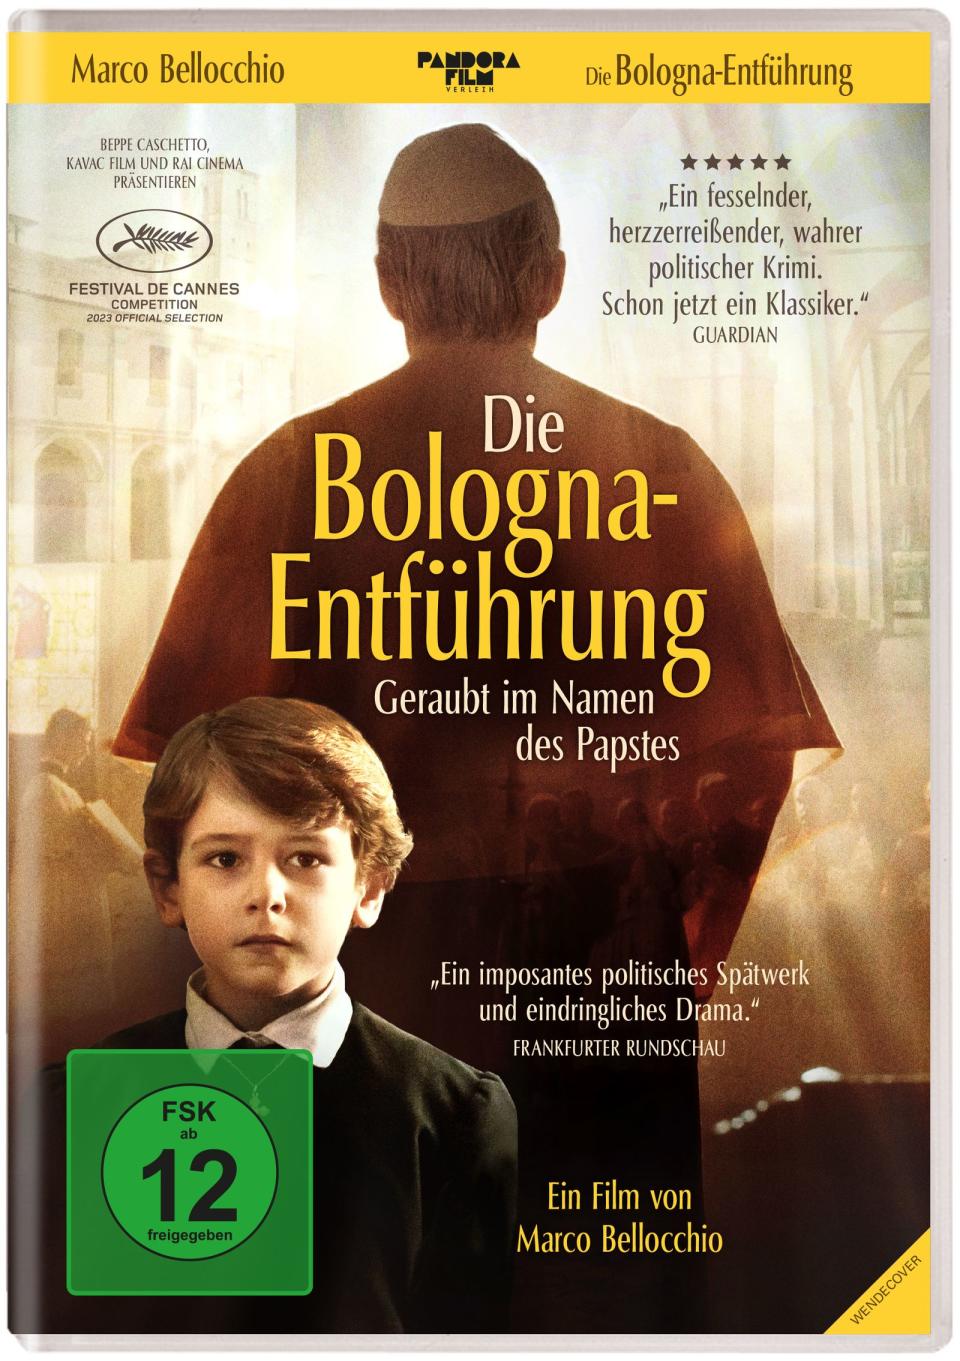 "Die Bologna-Entführung - Geraubt im Namen des Papstes" erzählt von einem historisch verbürgten Kinderraub, der von oberster kirchlicher Stelle angeordnet wurde. (Bild: Pandora Film)